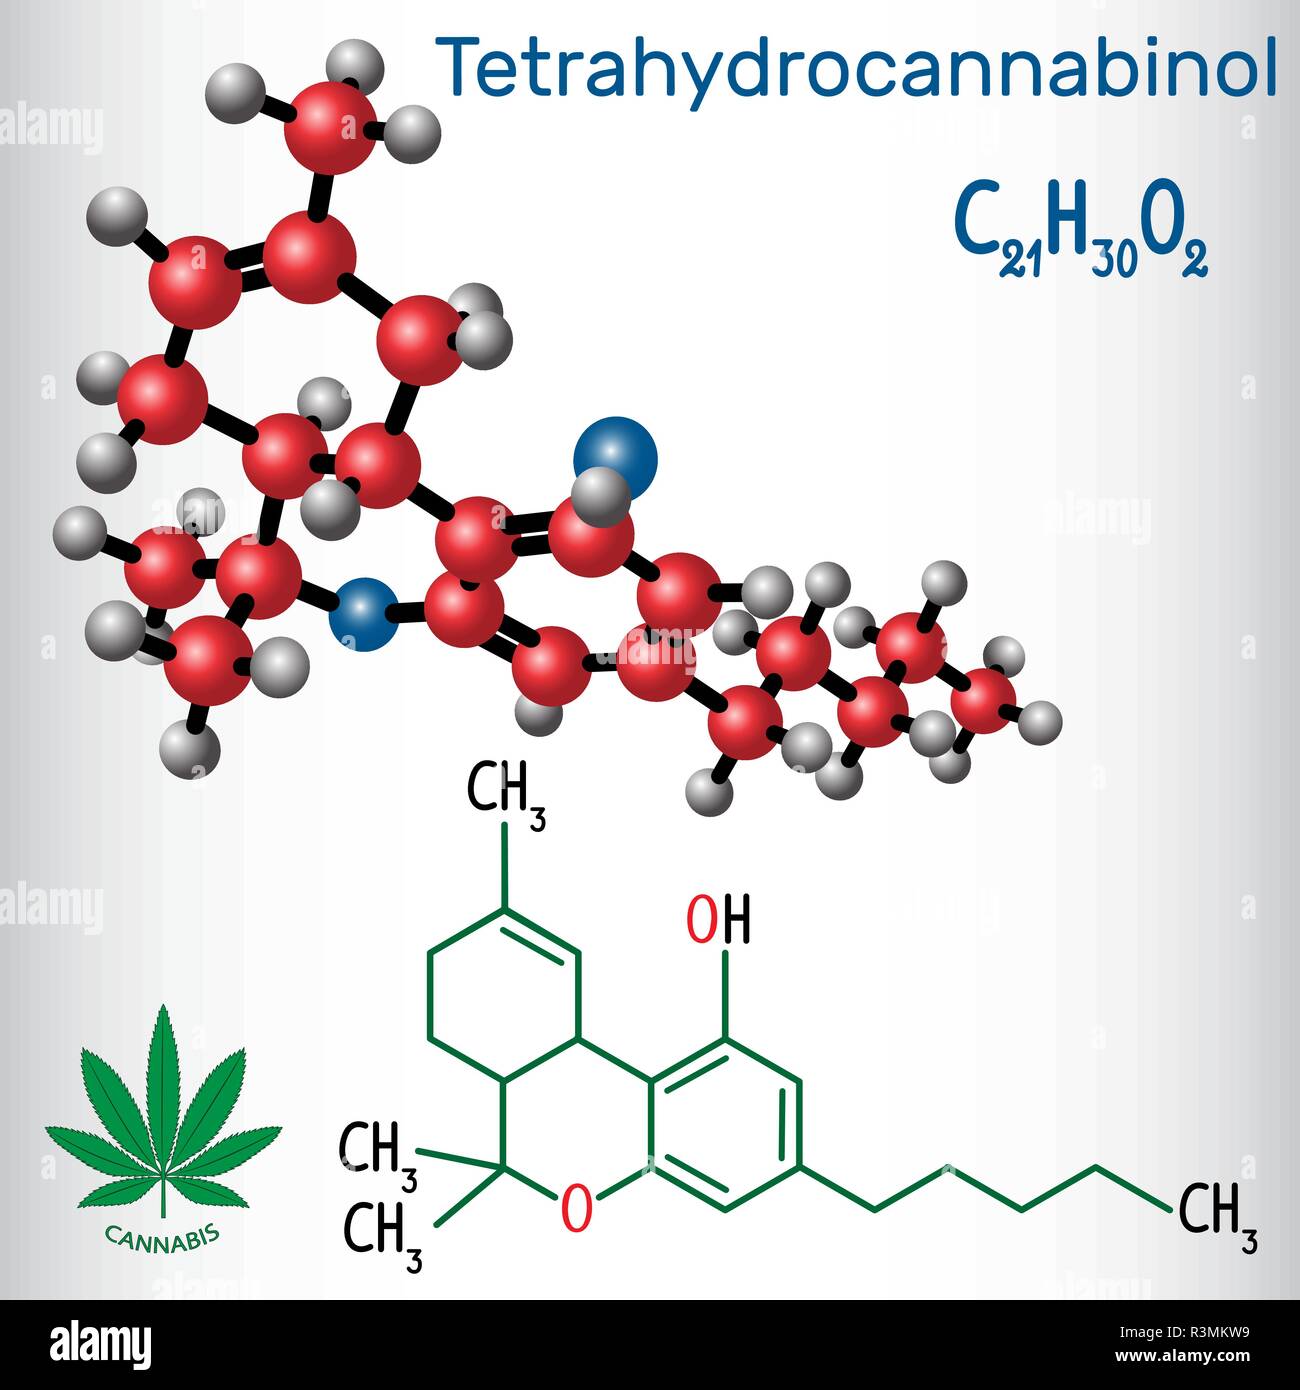 Tetrahydrocannabinol (THC) - Strukturelle chemische Formel und Molekül-Modell. Die wichtigsten psychoaktiven Bestandteil von Cannabis. Vektor illustratio Stock Vektor